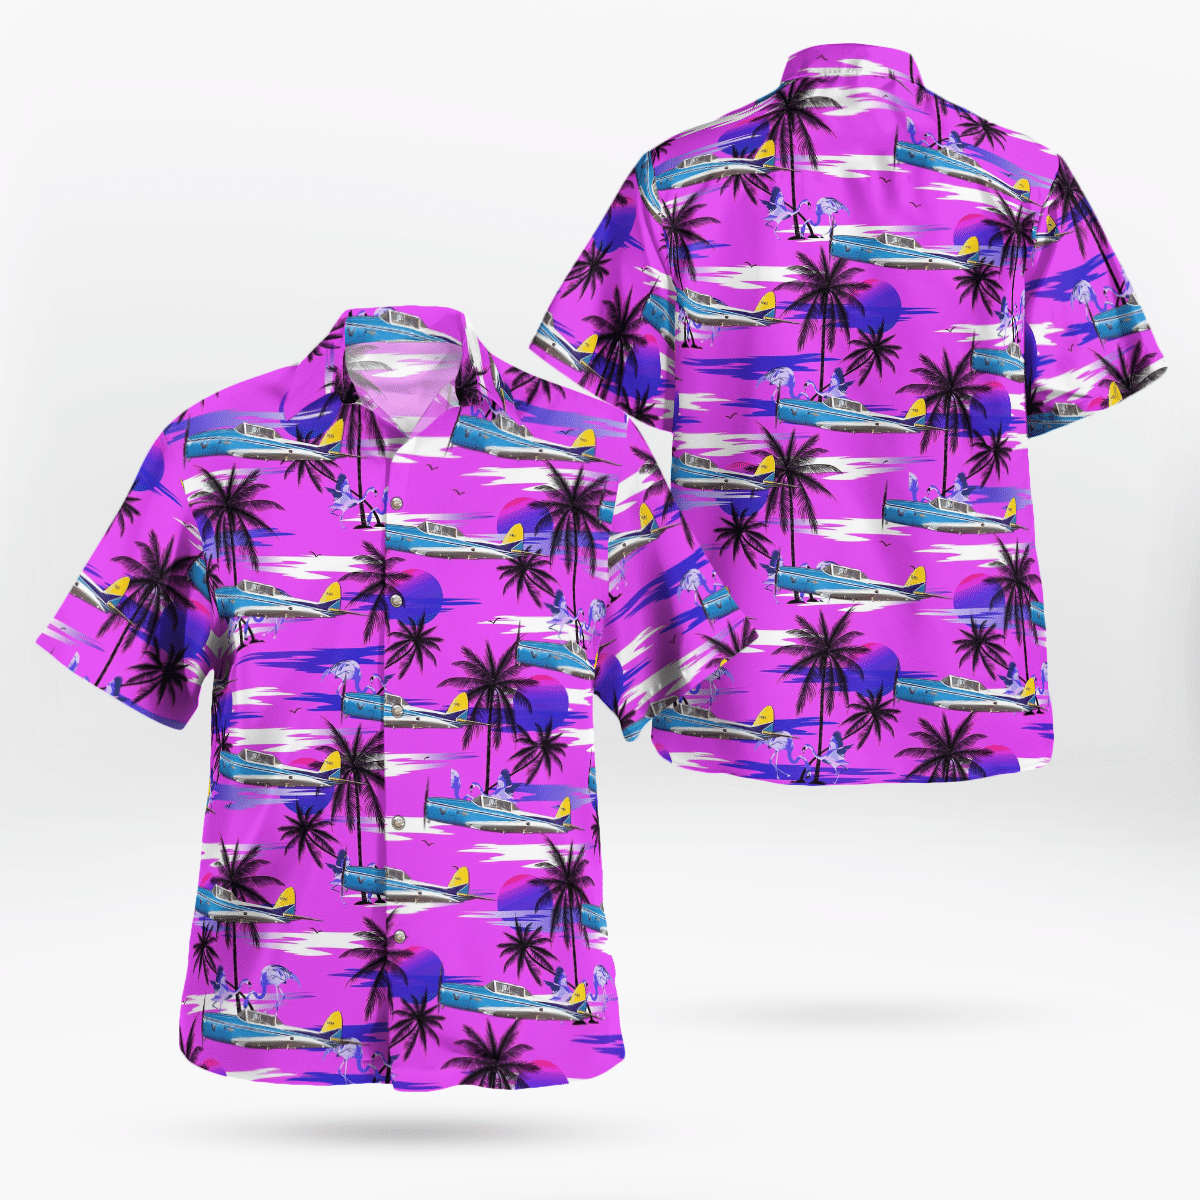 Best Hawaiian shirts 2022 211